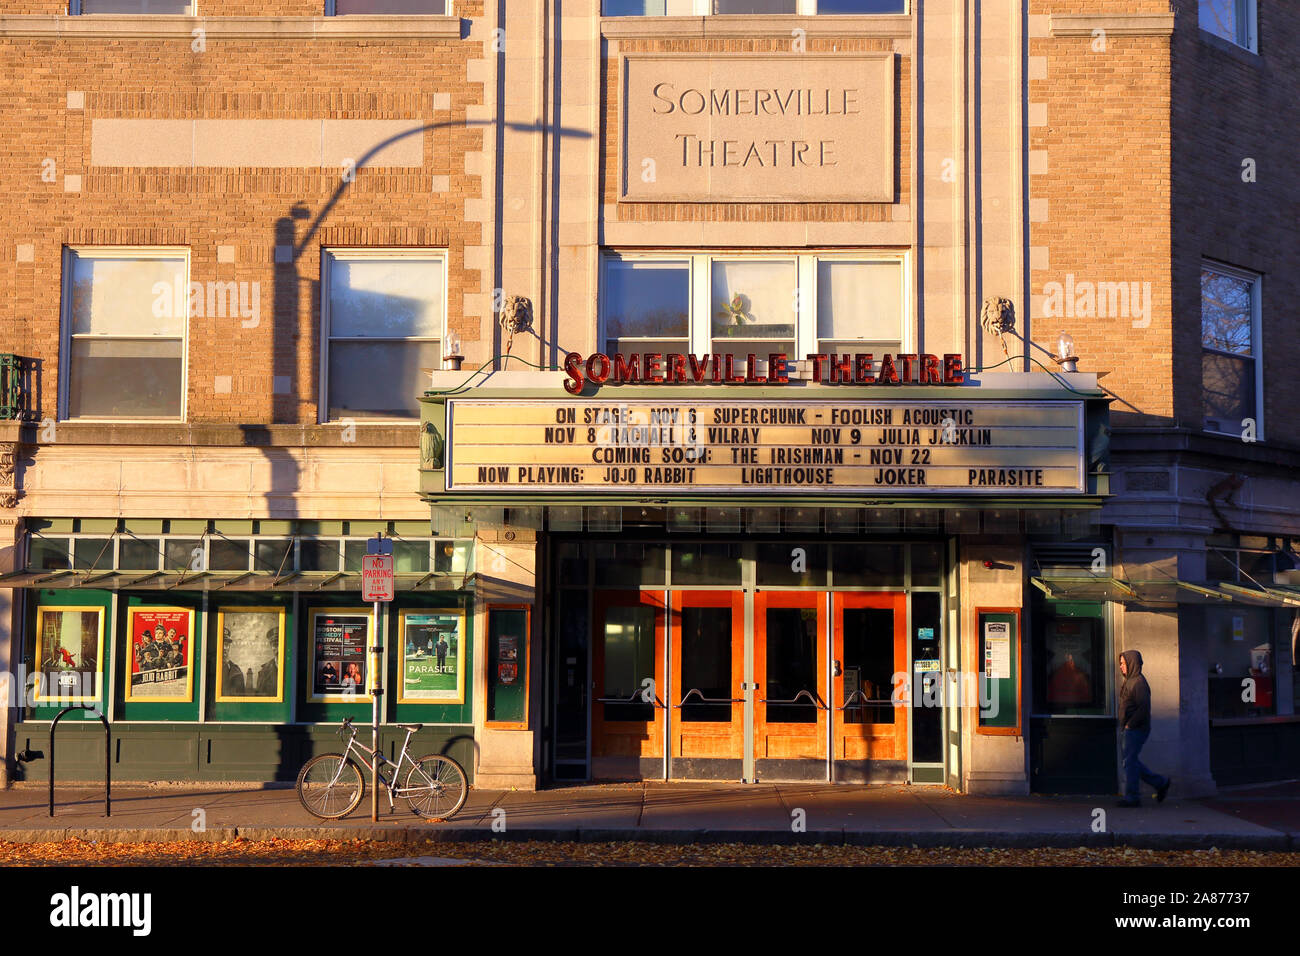 Somerville Theatre, 55 Davis Square, Somerville, MA. aussen Verkaufsplattform, einem Film, Theater und Performance. Stockfoto